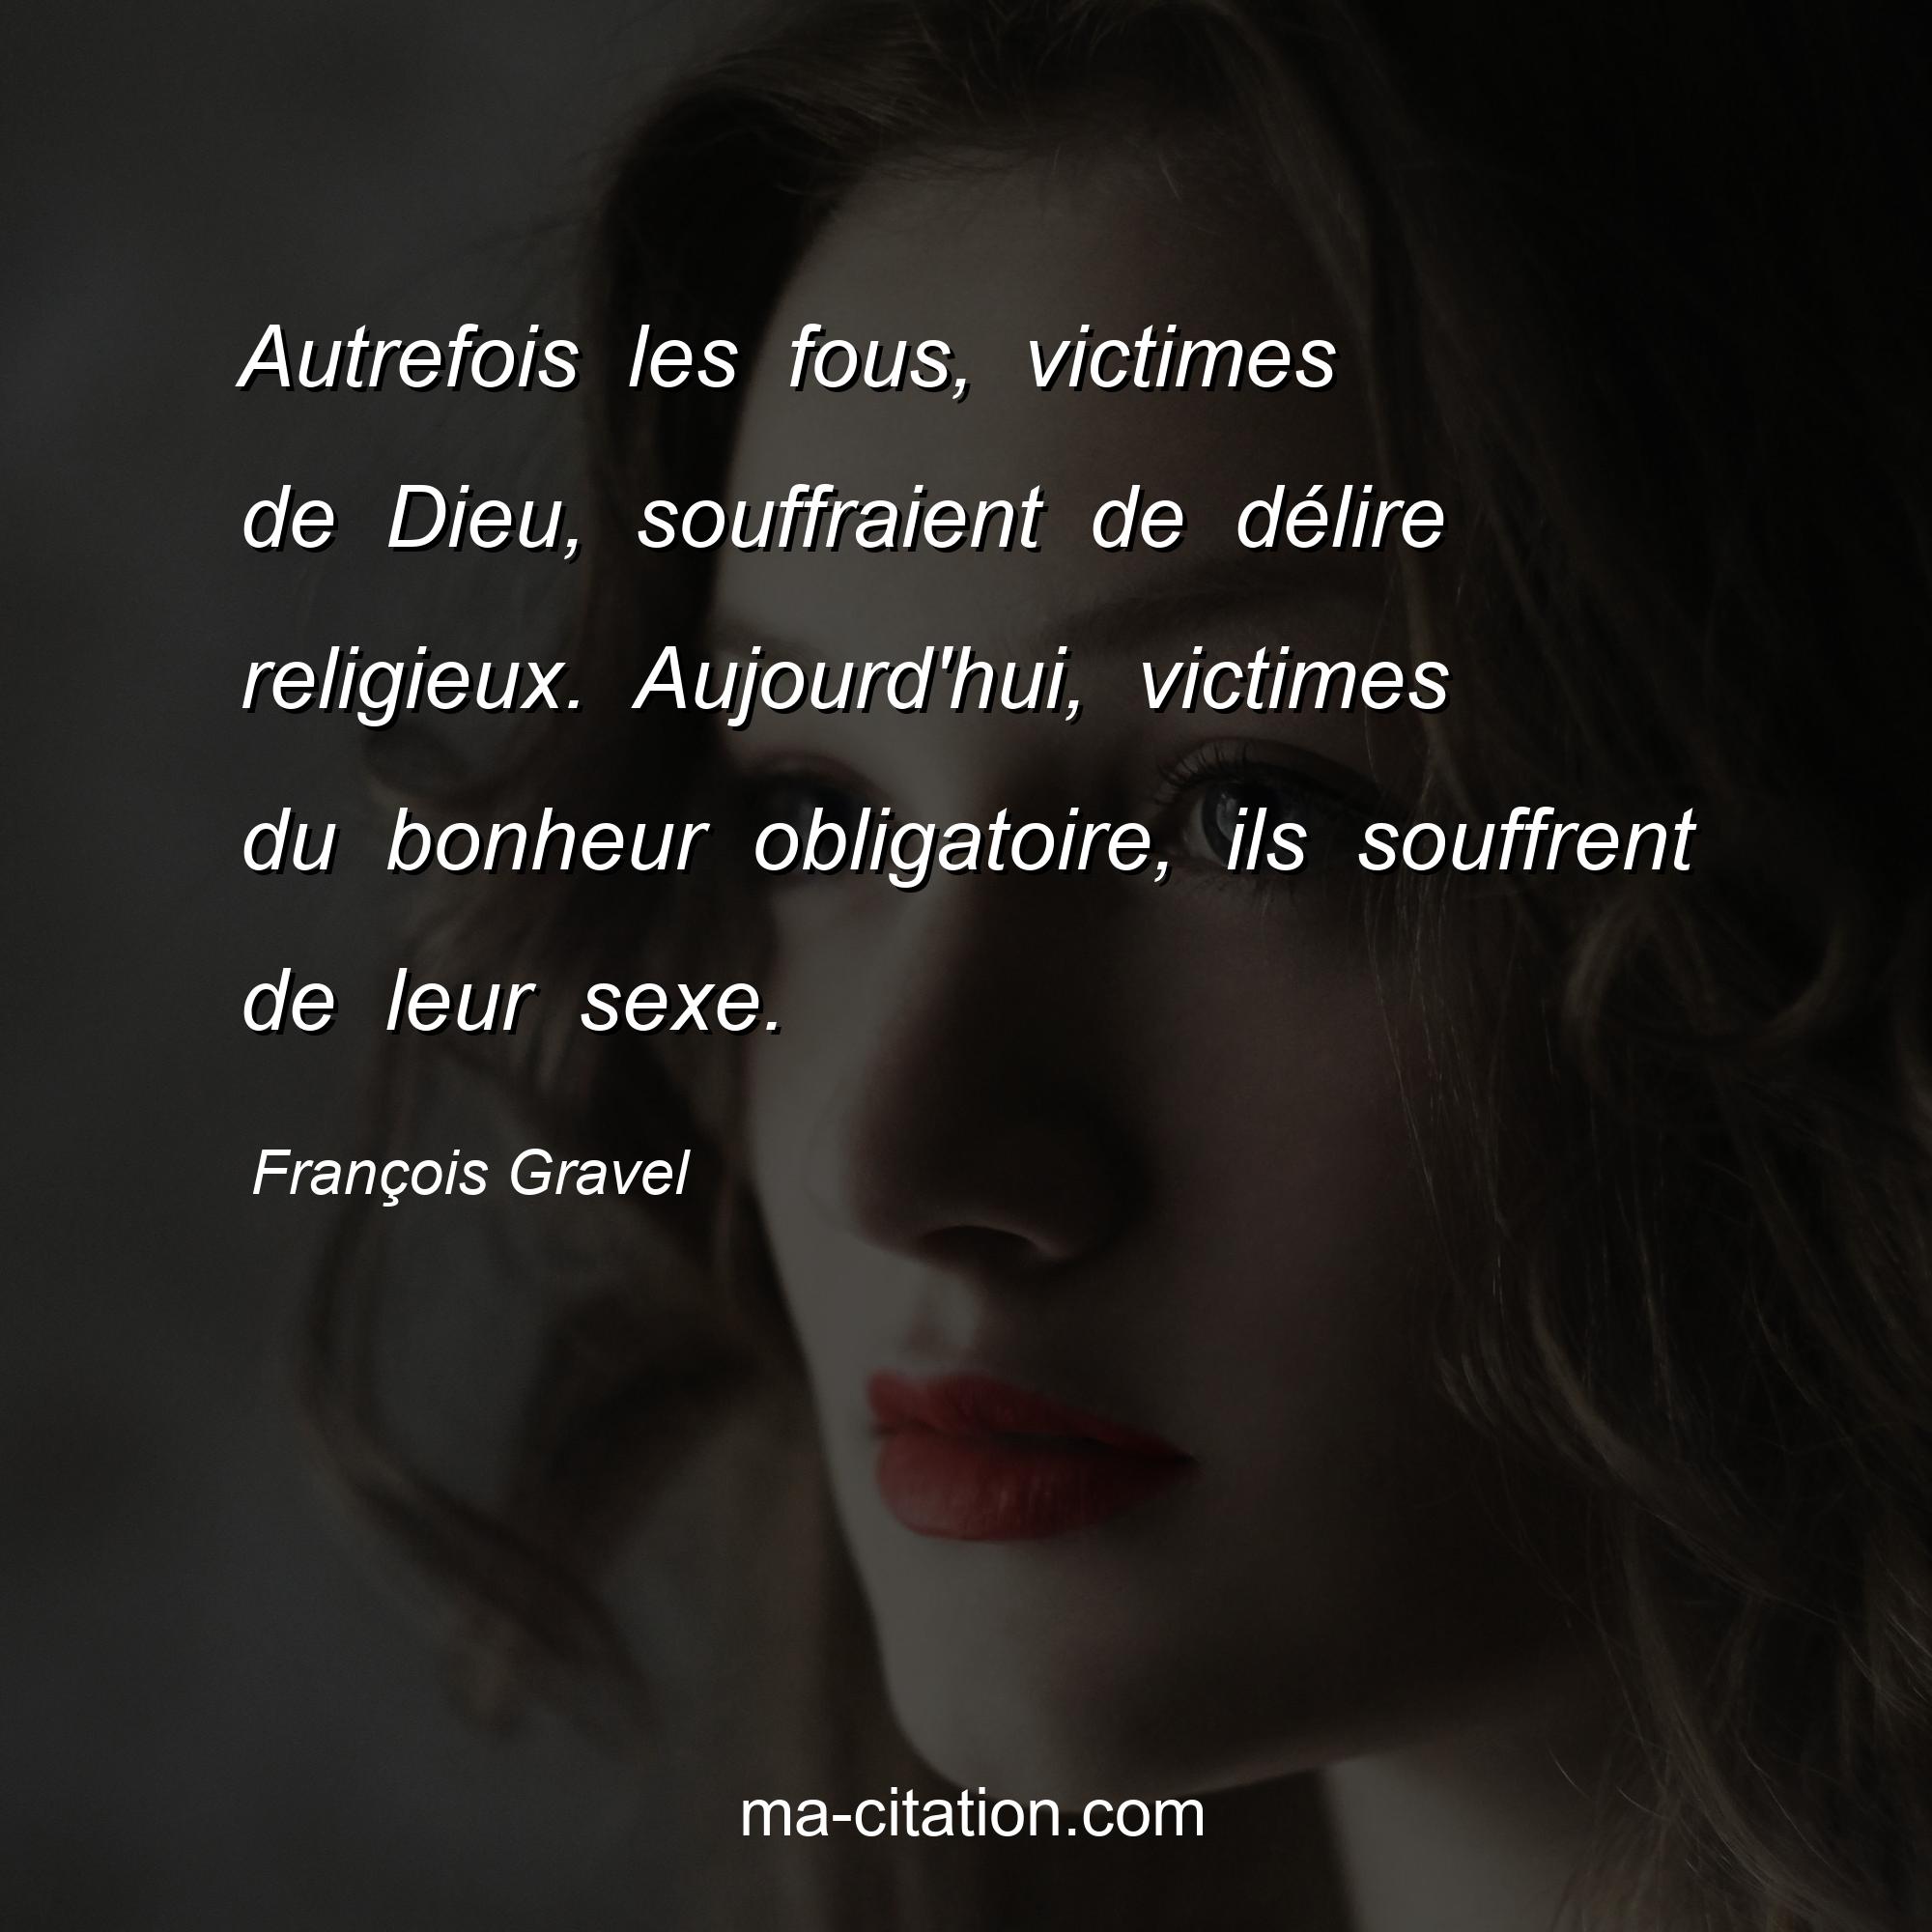 François Gravel : Autrefois les fous, victimes de Dieu, souffraient de délire religieux. Aujourd'hui, victimes du bonheur obligatoire, ils souffrent de leur sexe.